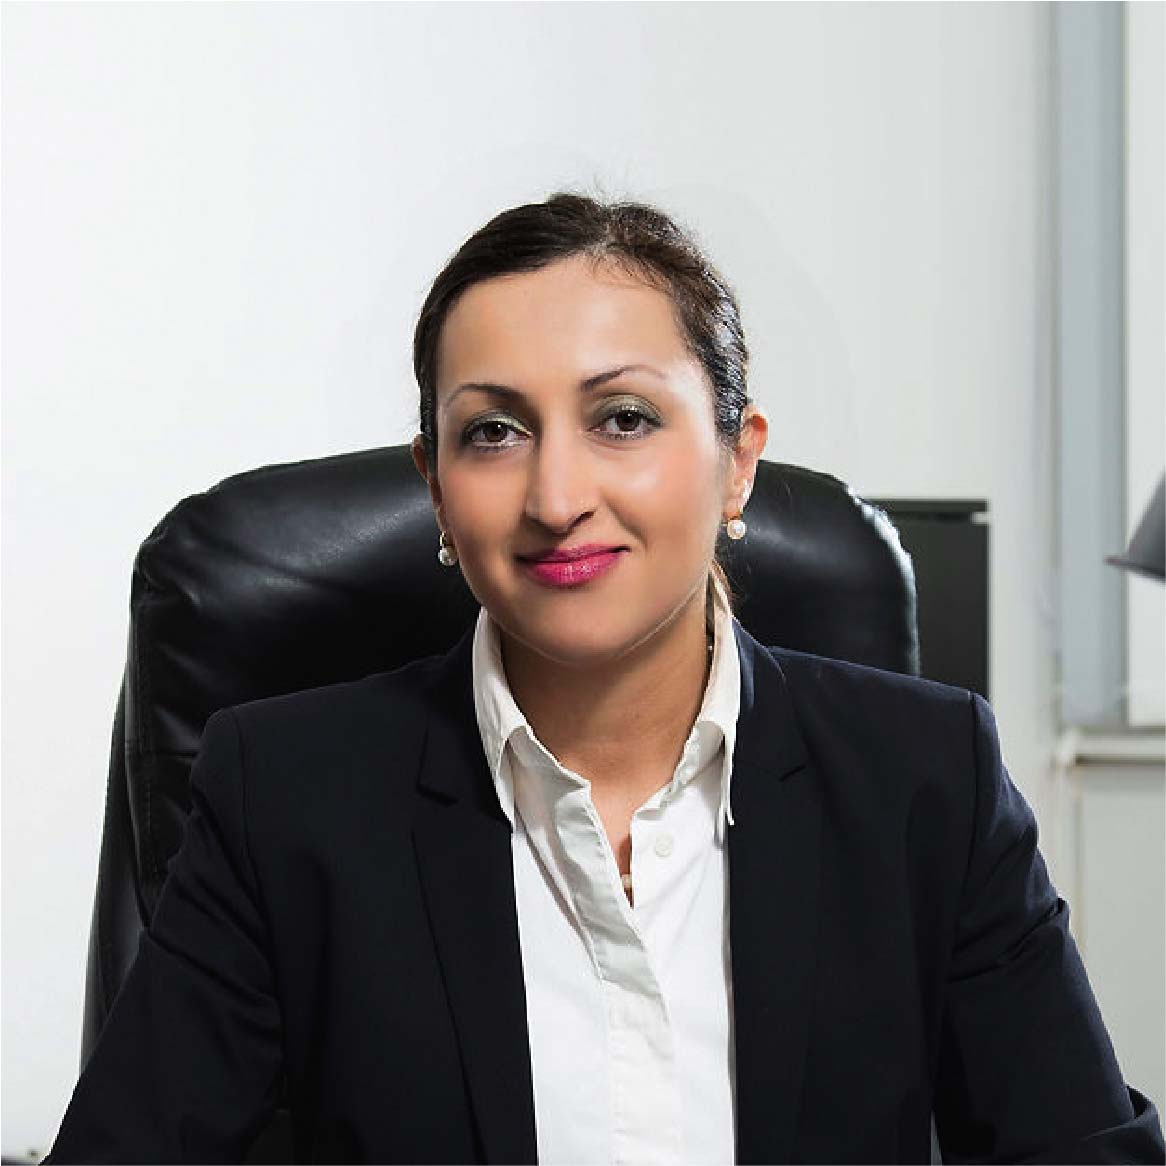 Scheidungsanwältin Dortmund Farzaneh Klein-Endebrock ist Ihre persönliche Ansprechpartnerin in der Kanzlei am Wallring - Dortmund